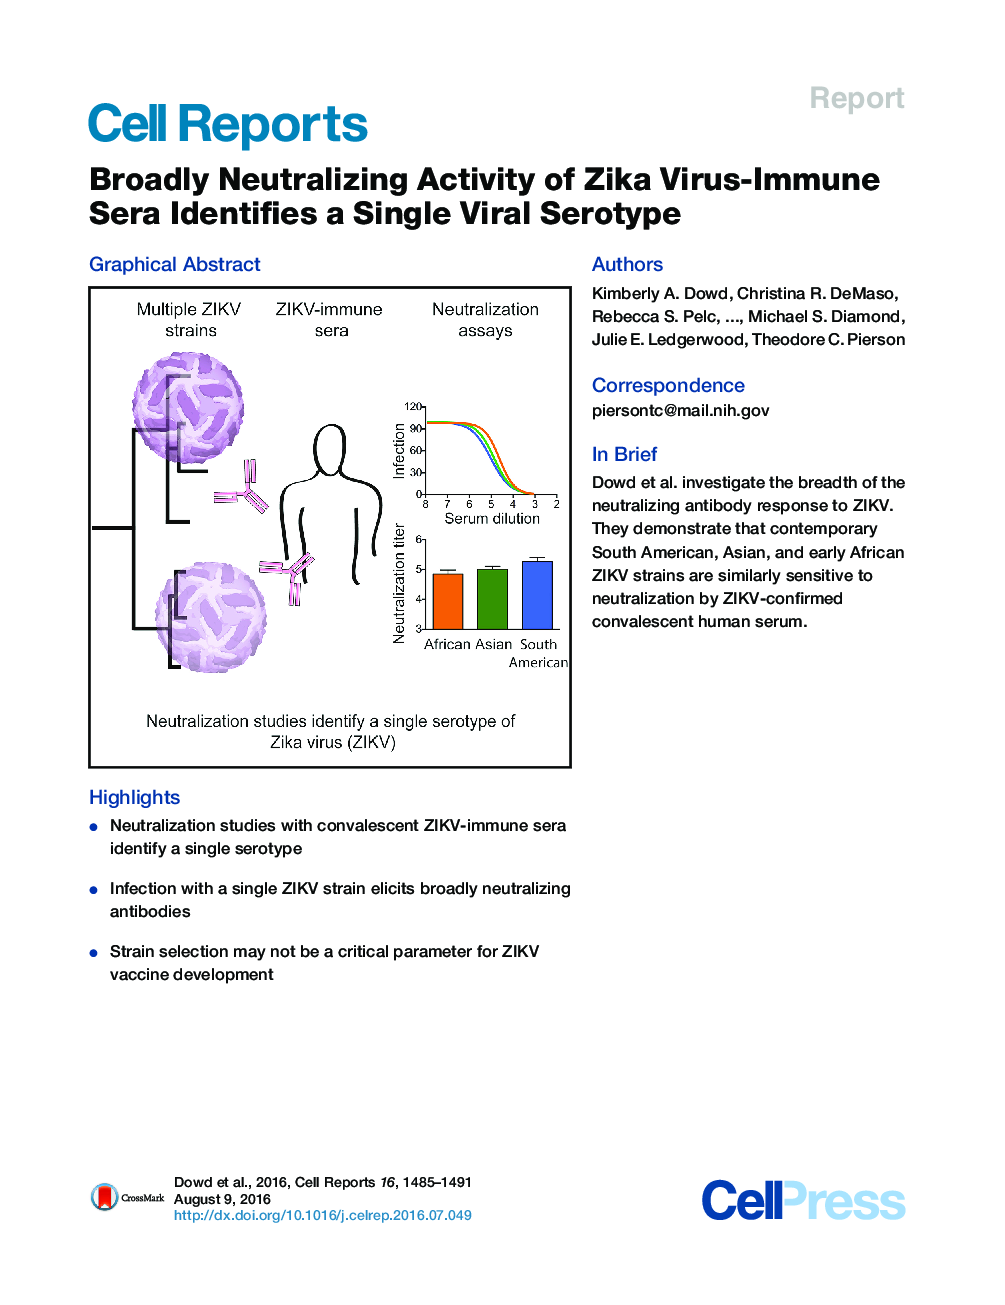 فعالیت وسیع خنثی سازی سرفم ویروس ایمنی زیکا، سروتایپ ویروسی تنها را شناسایی می کند